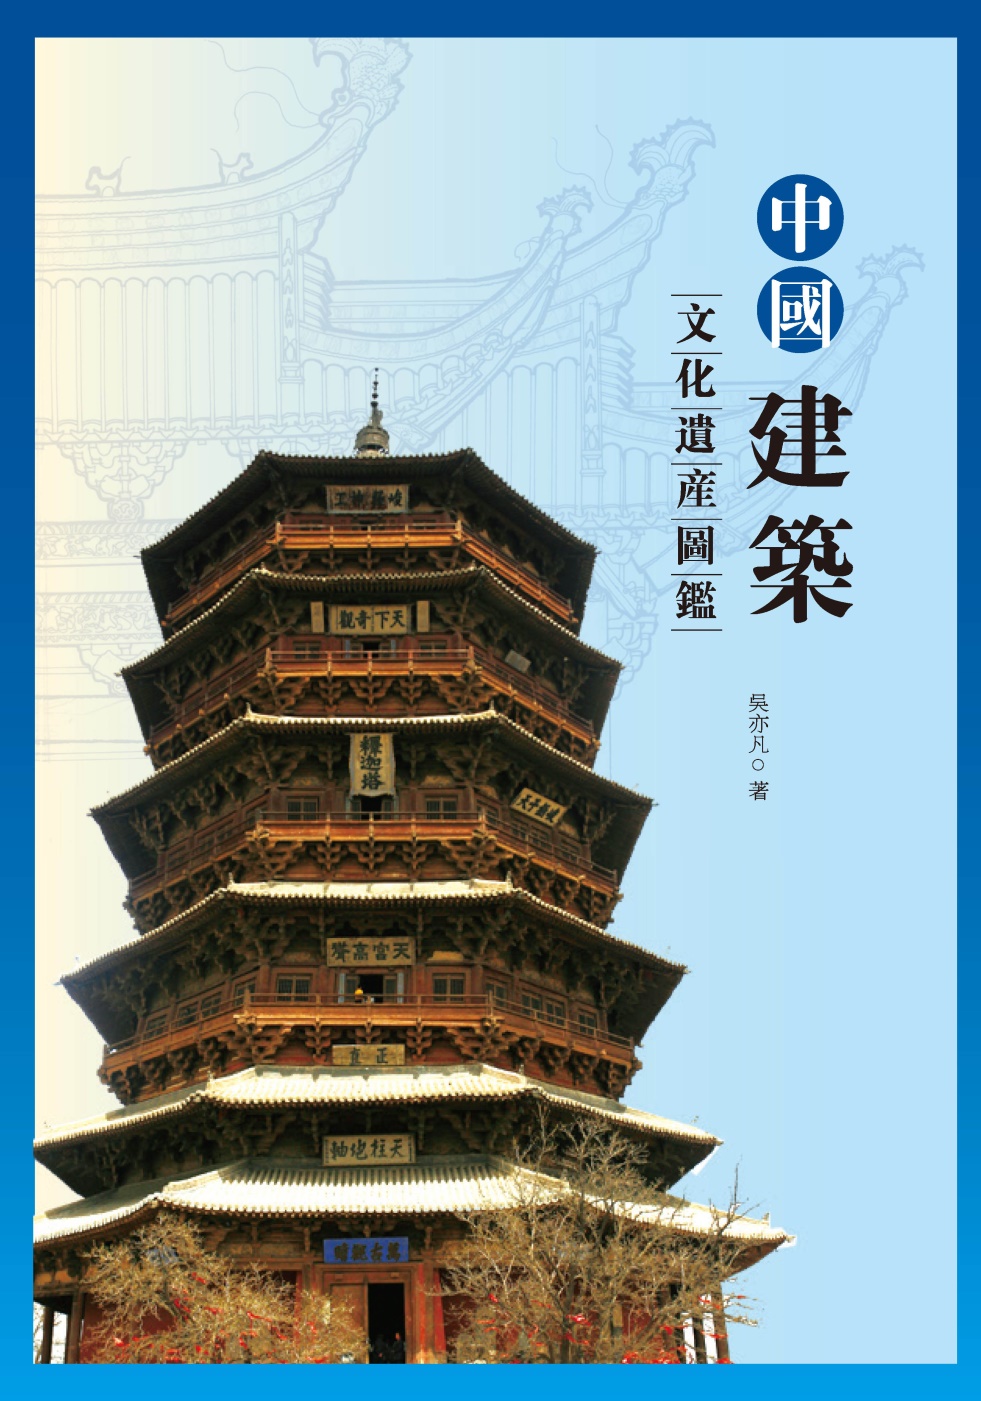 中國建築文化遺產圖鑑(另開視窗)